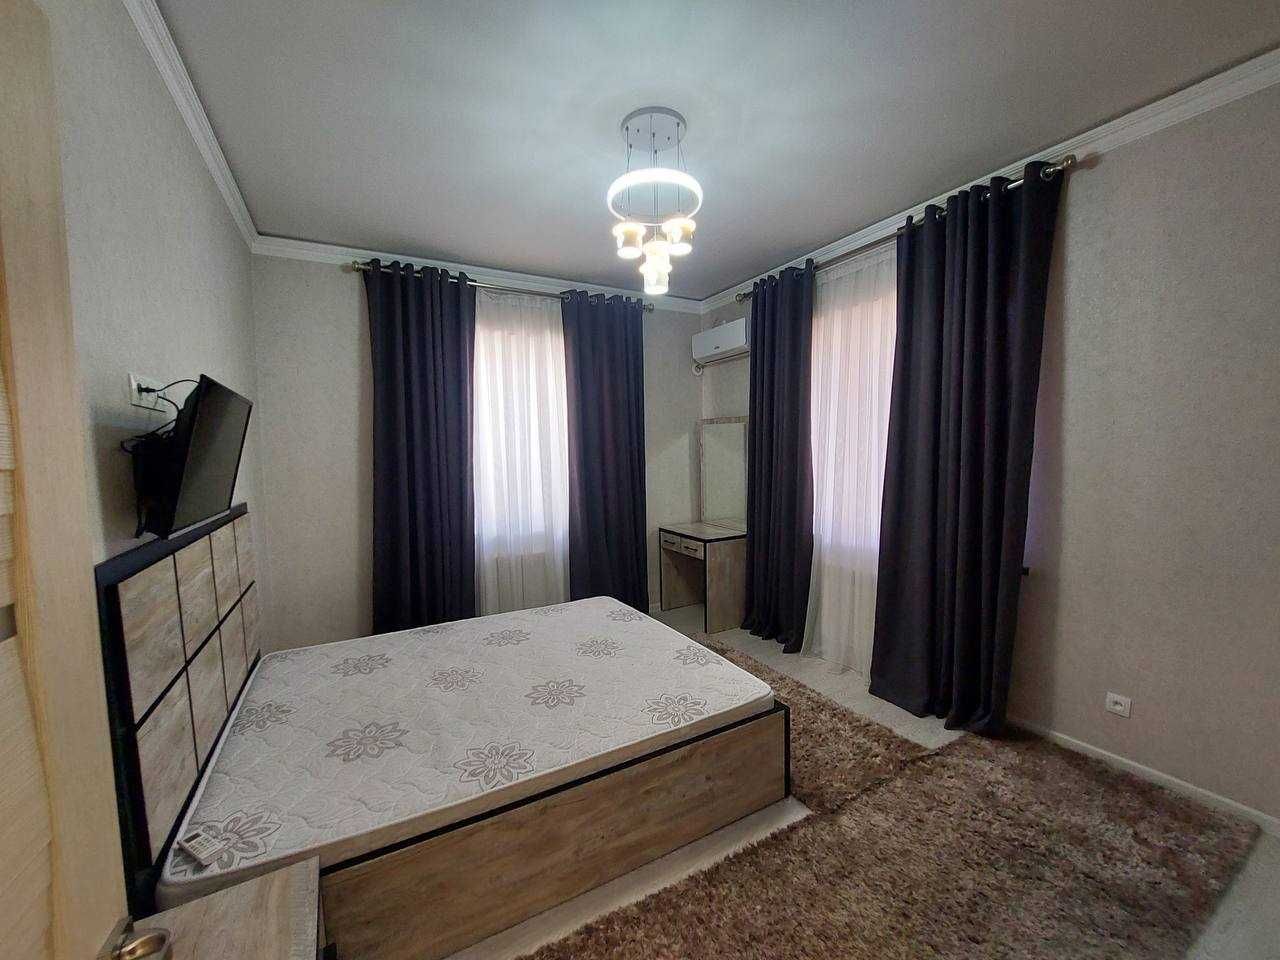 Квартира на Глинке на ЖК Dream House с евроремонтом по хорошей цене!